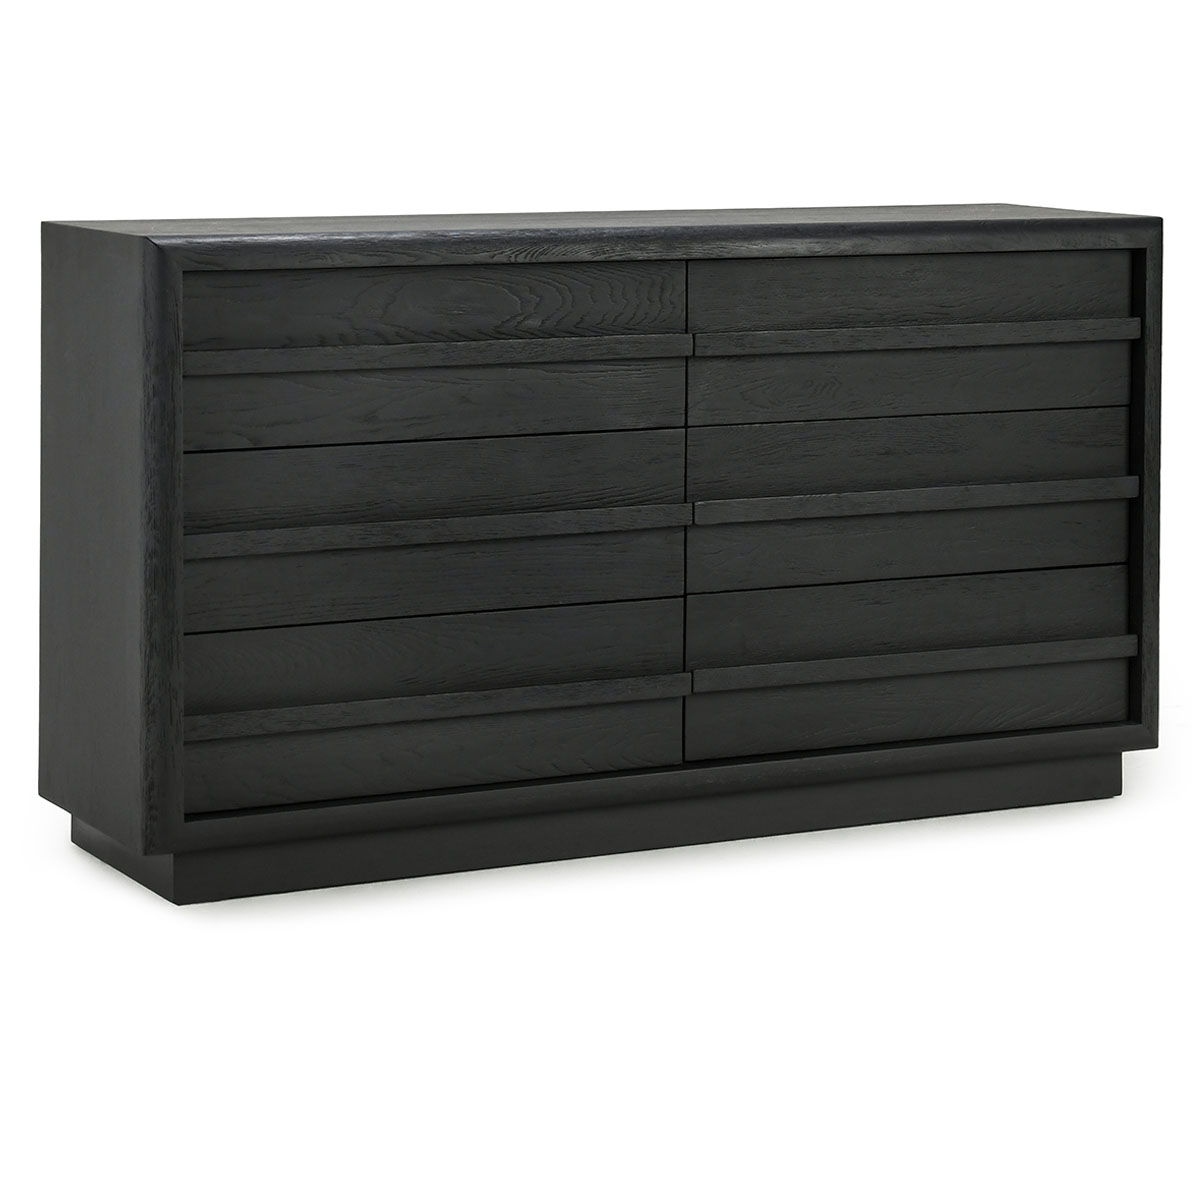 Sedona - 6 Drawer Dresser - Black